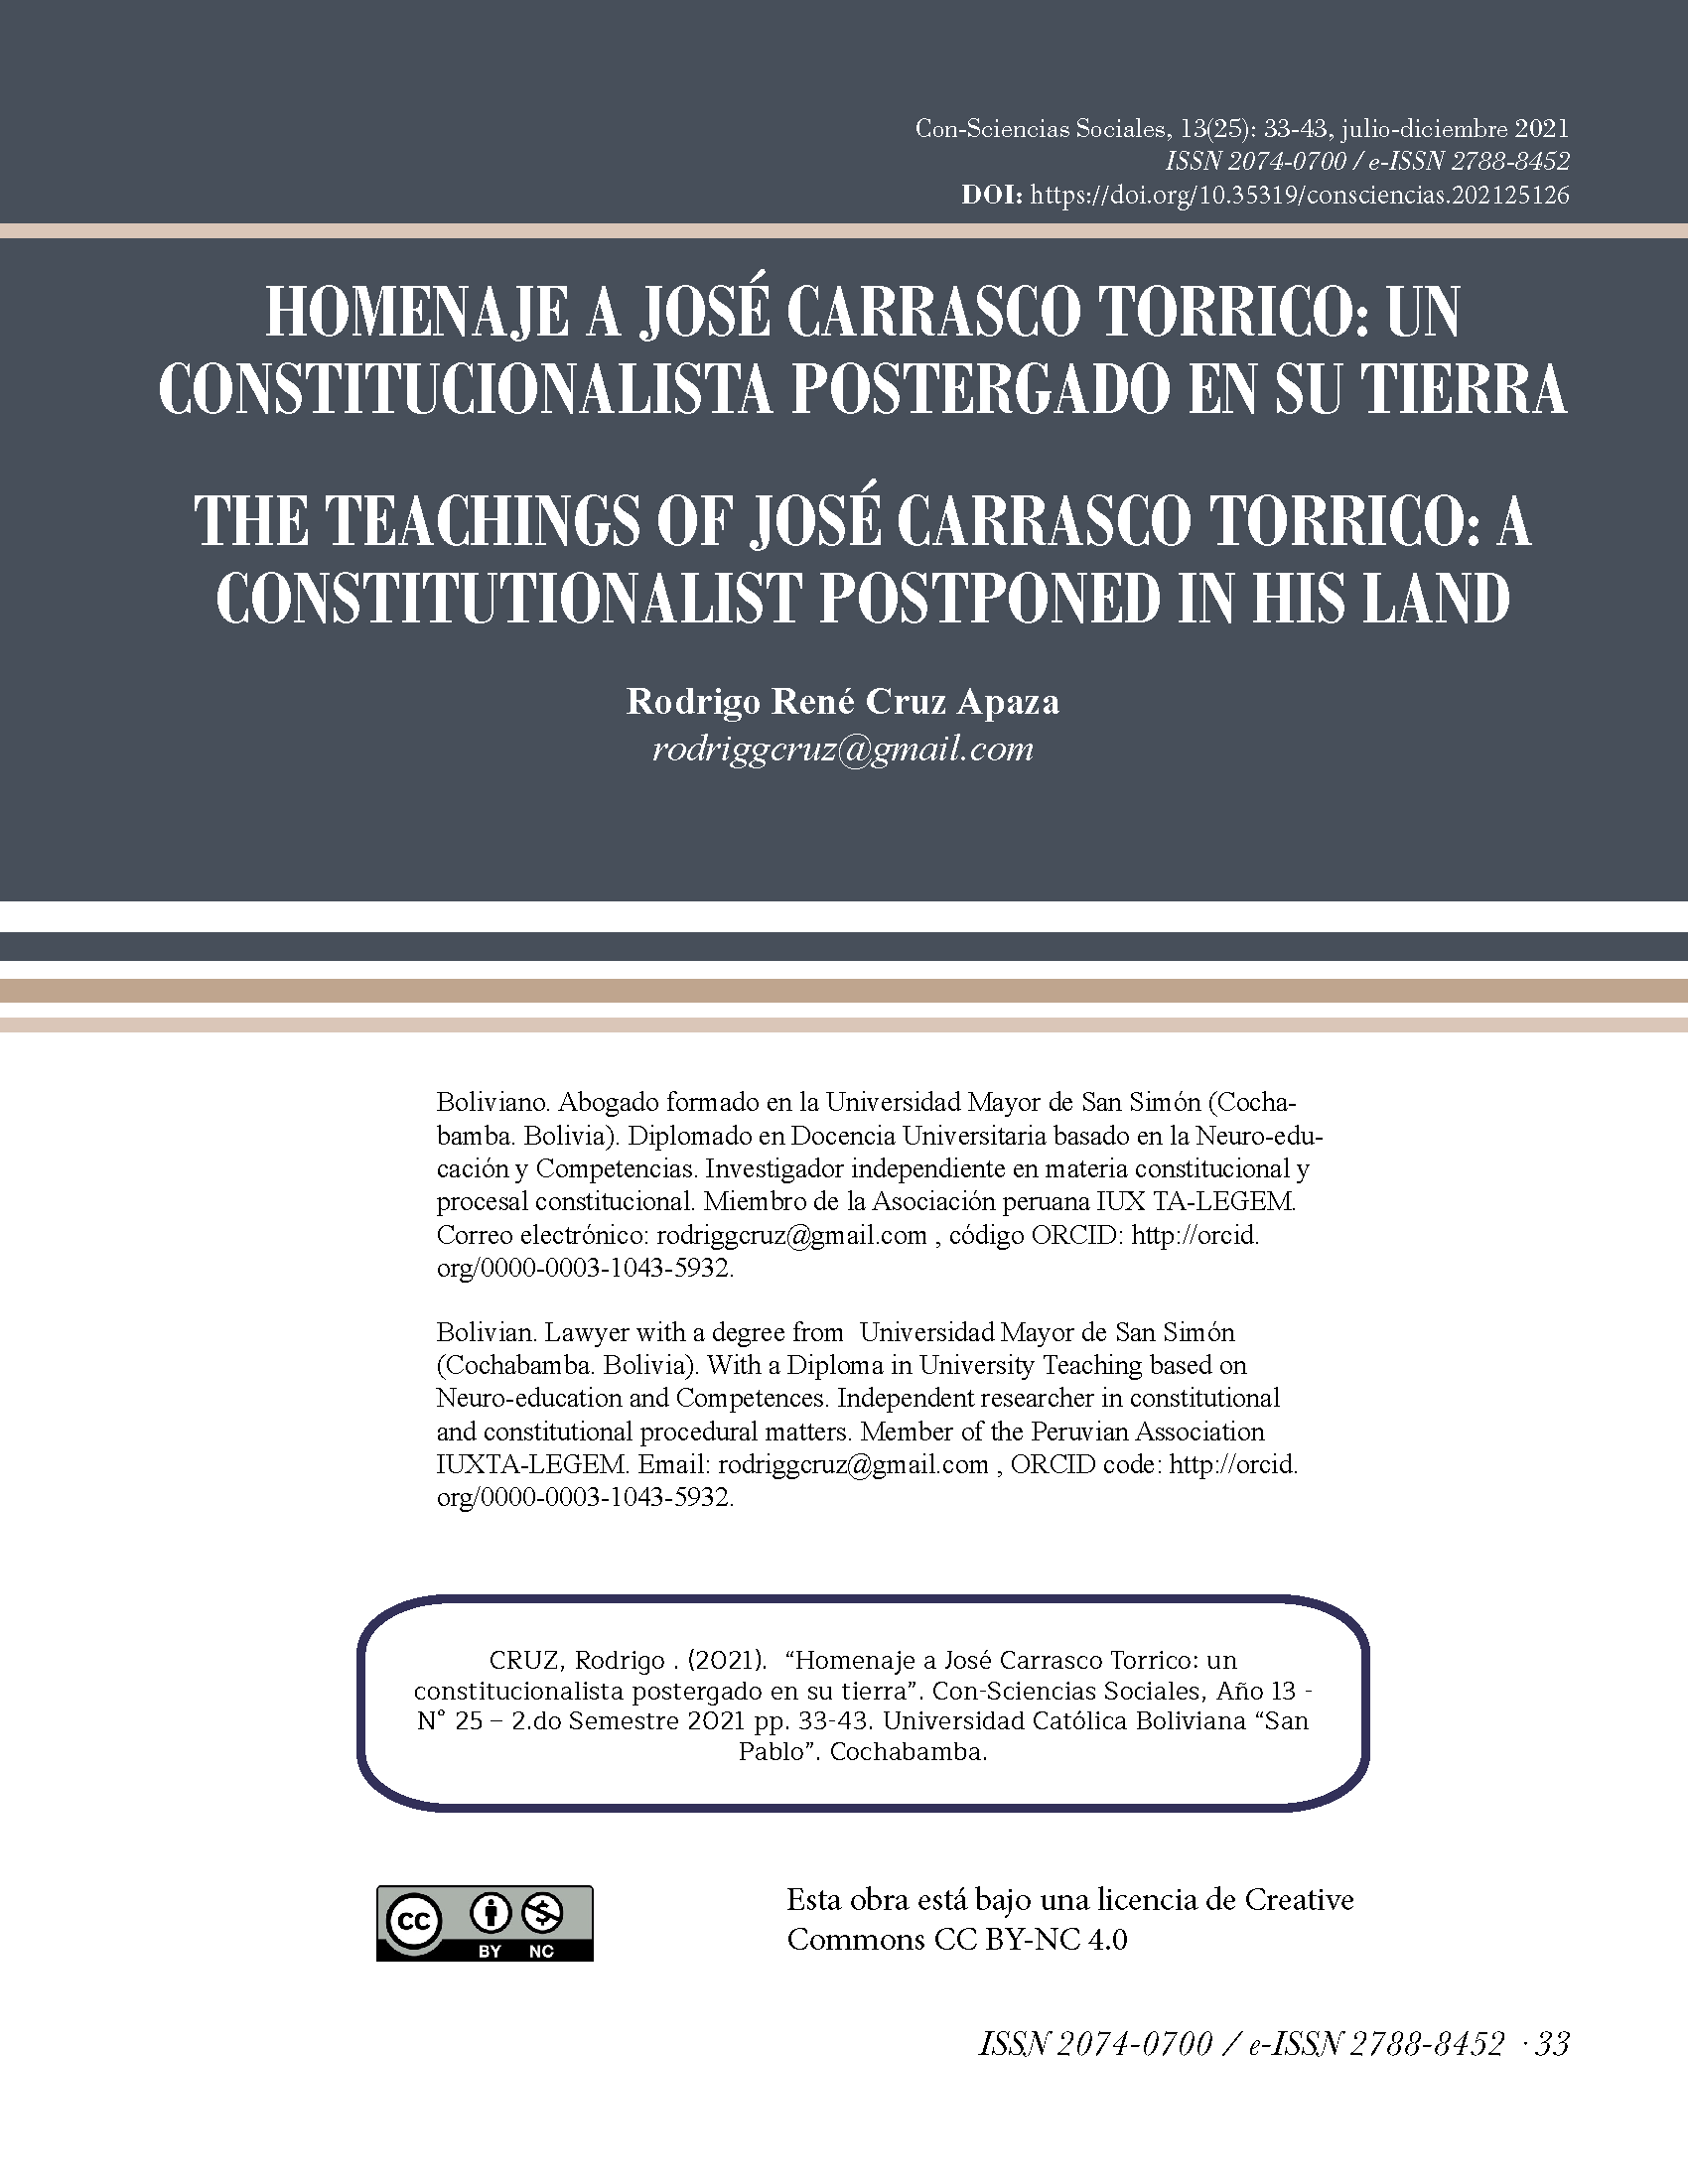 Homenaje a José Carrasco Torrico: Un constitucionalista postergado en su tierra